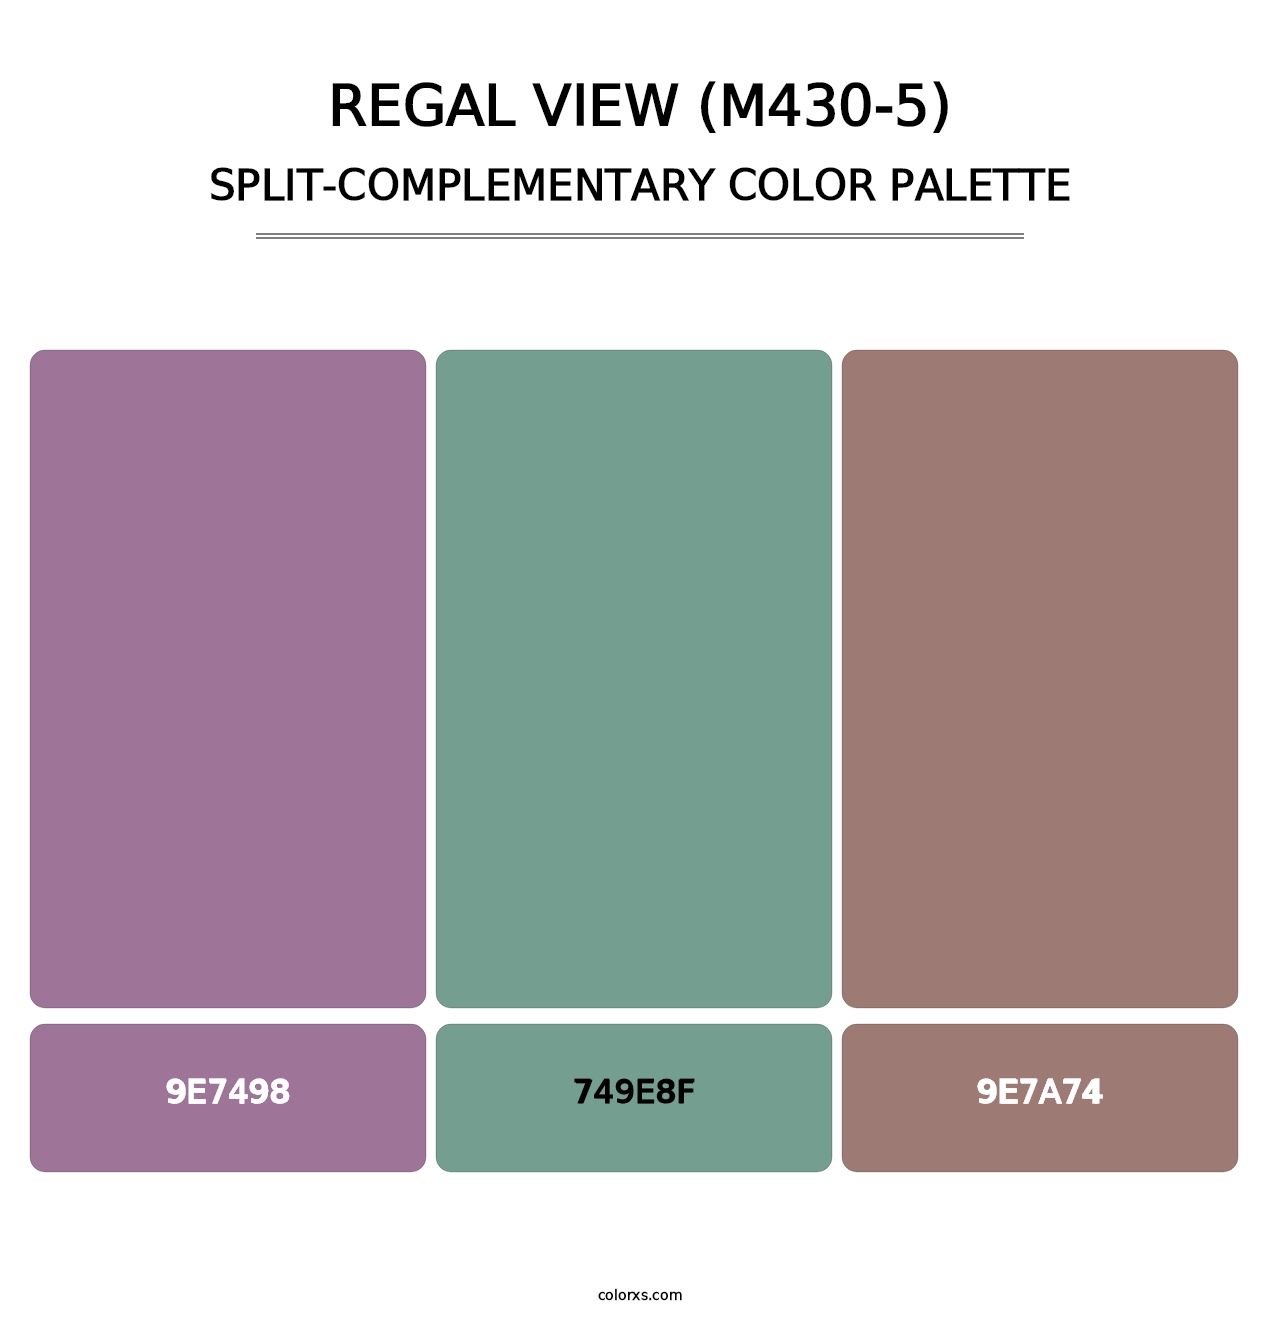 Regal View (M430-5) - Split-Complementary Color Palette